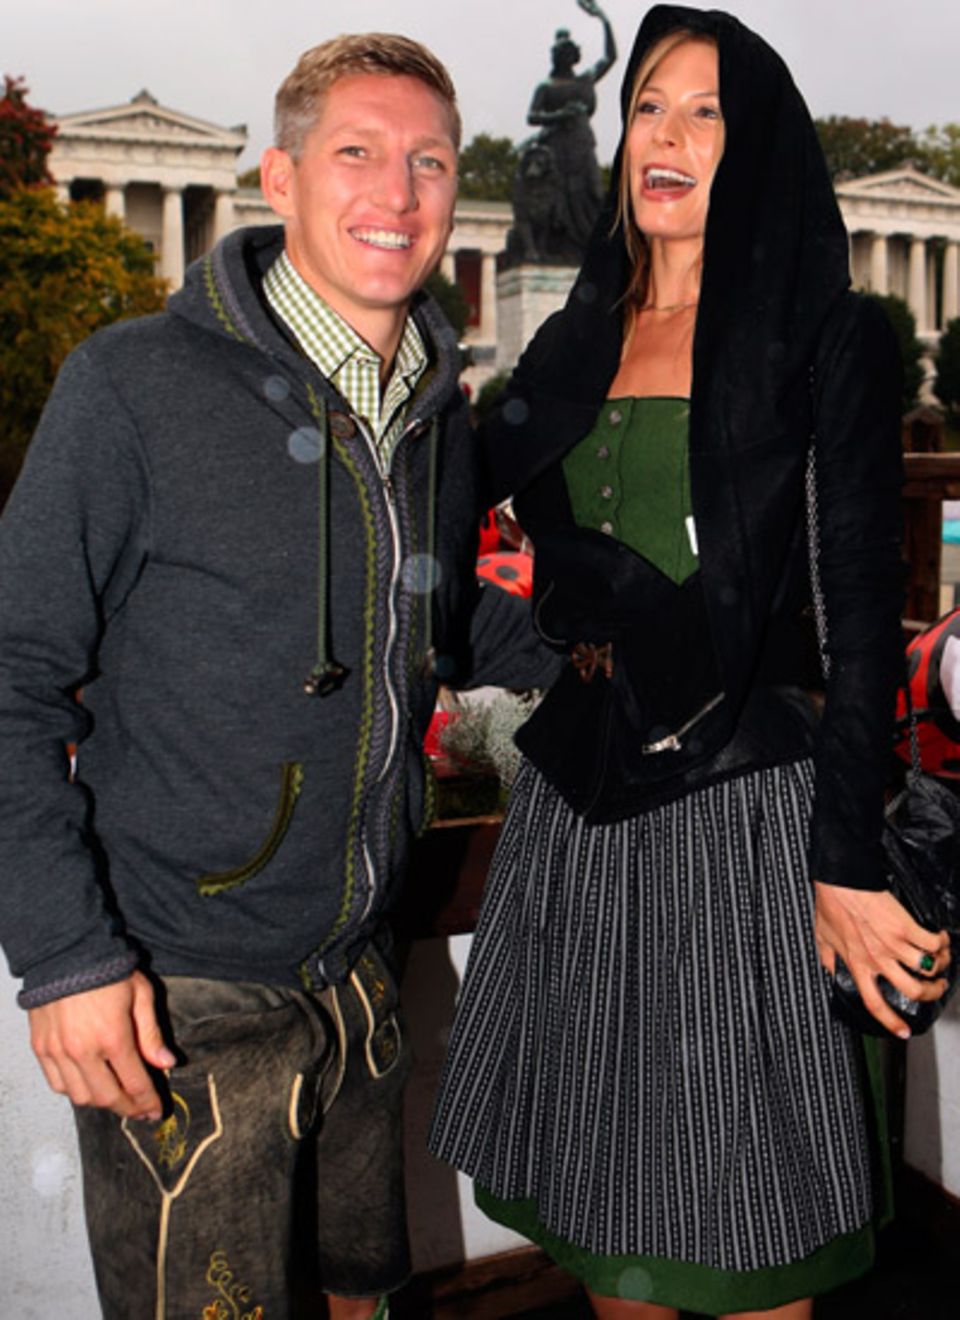 Der FC Bayern München besucht auch in diesem Jahr wieder geschlossen die Wiesn: Bastian Schweinsteiger und seine Freundin Sarah